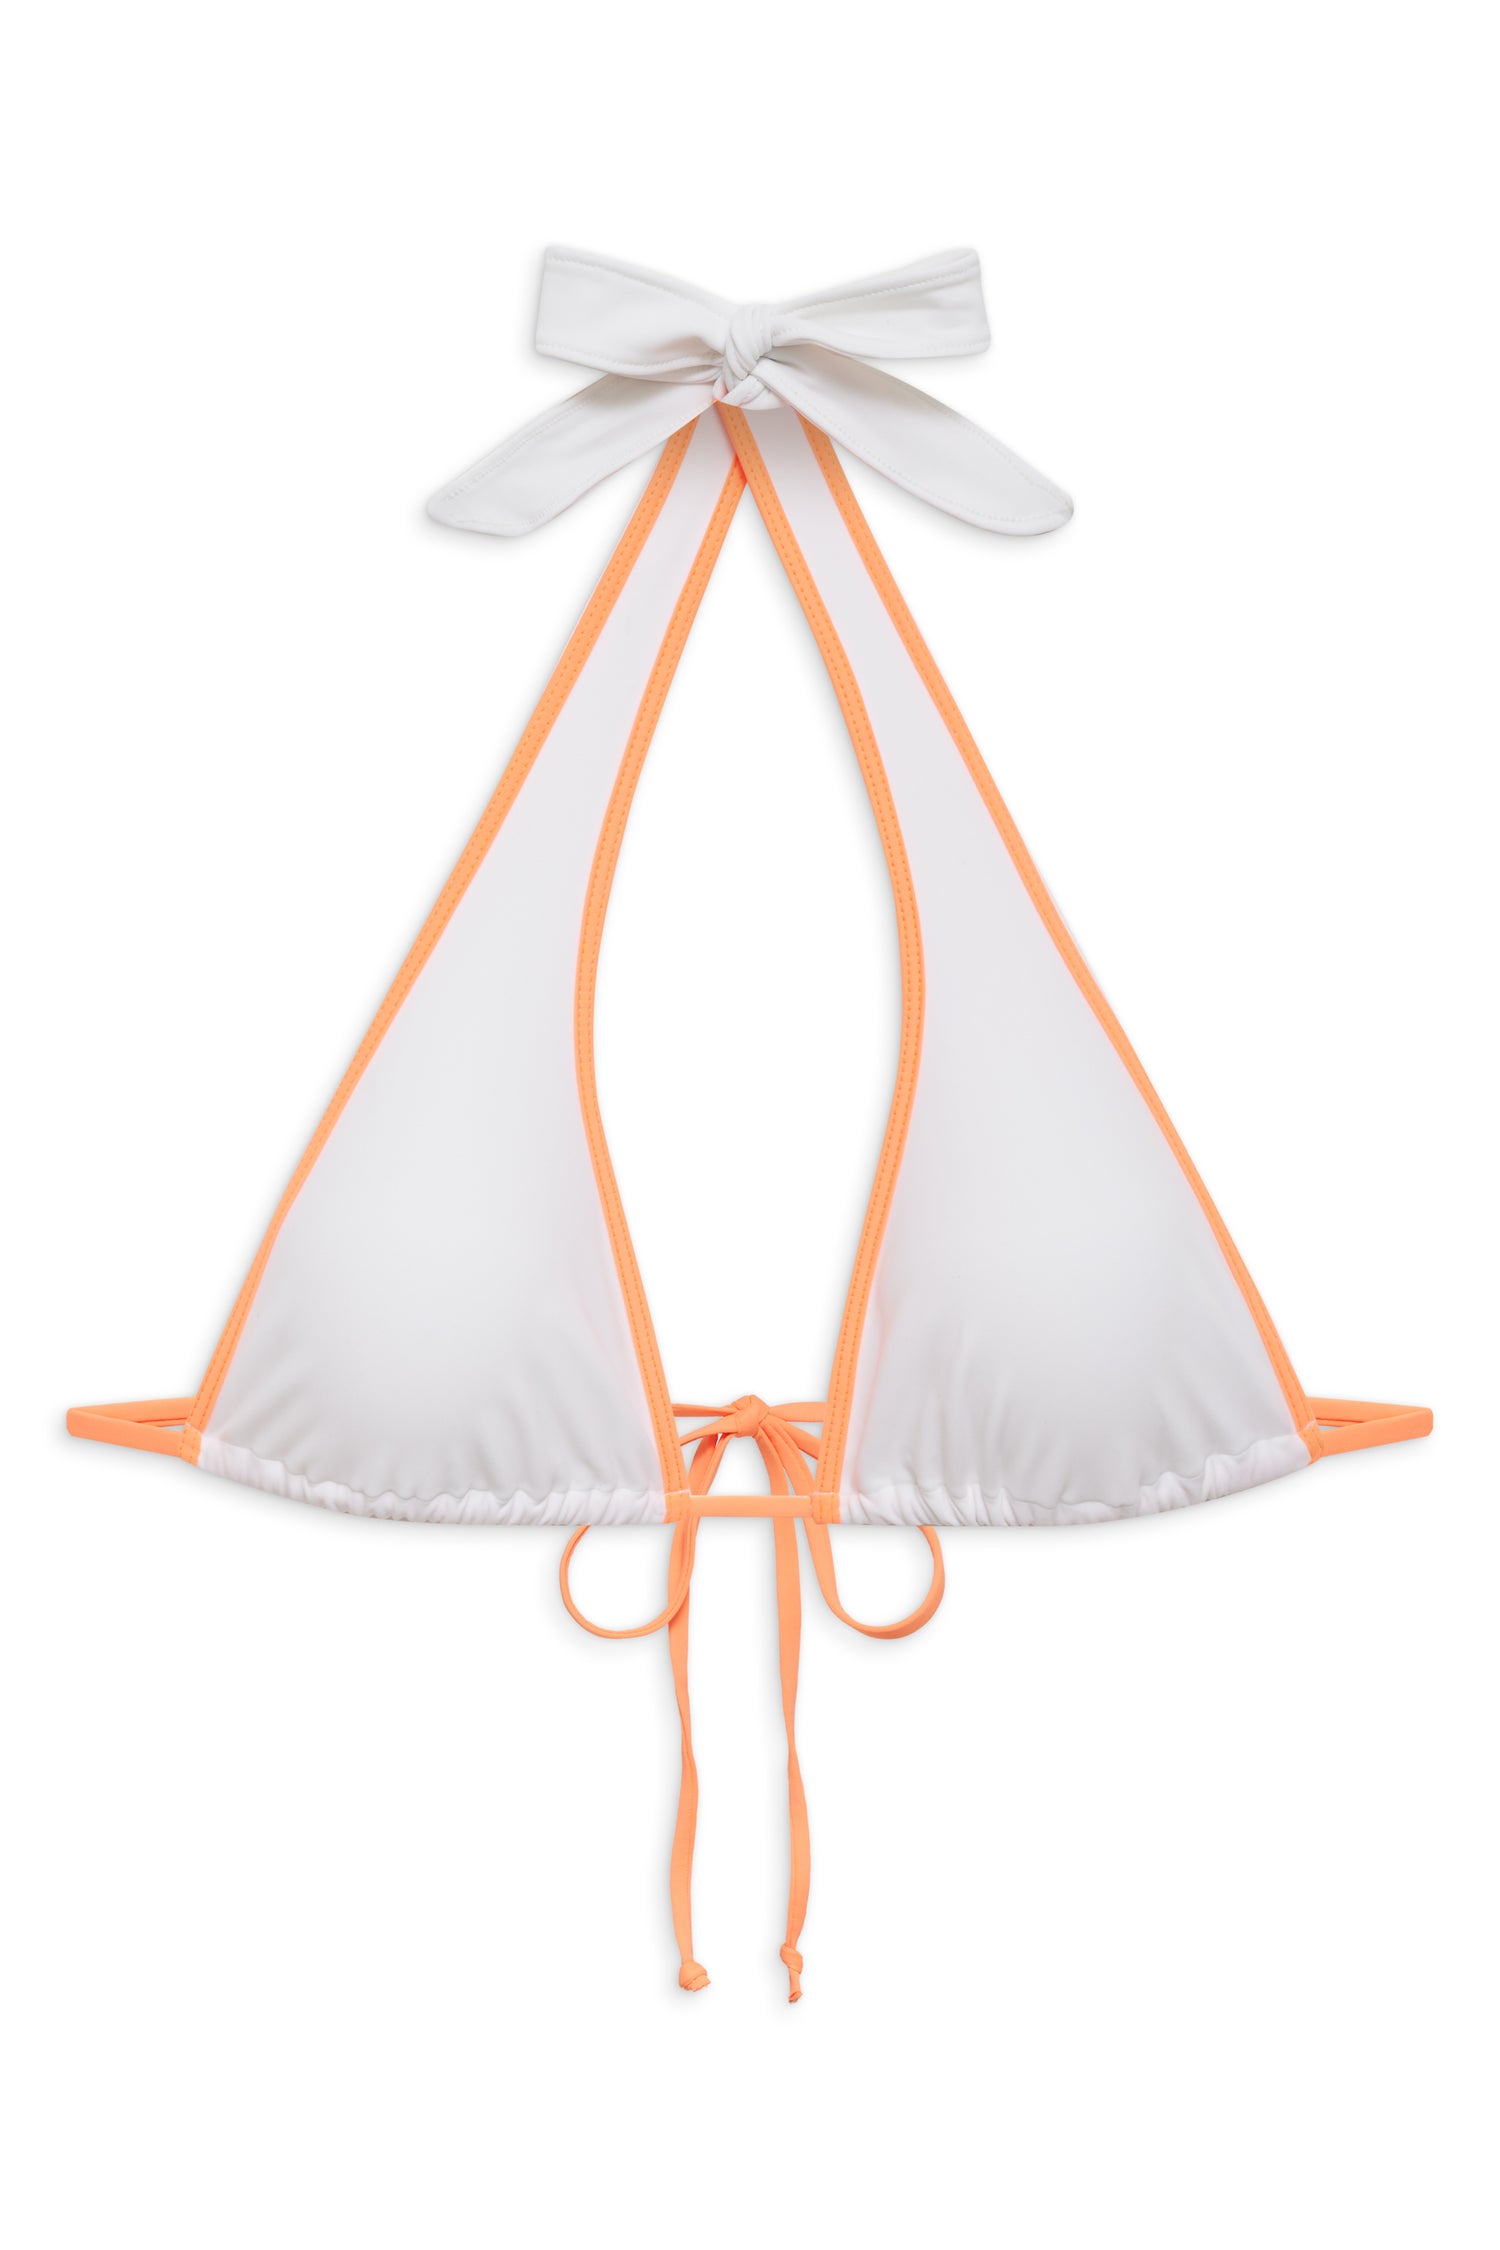 Diana Halter Bikini Top - Sherbet